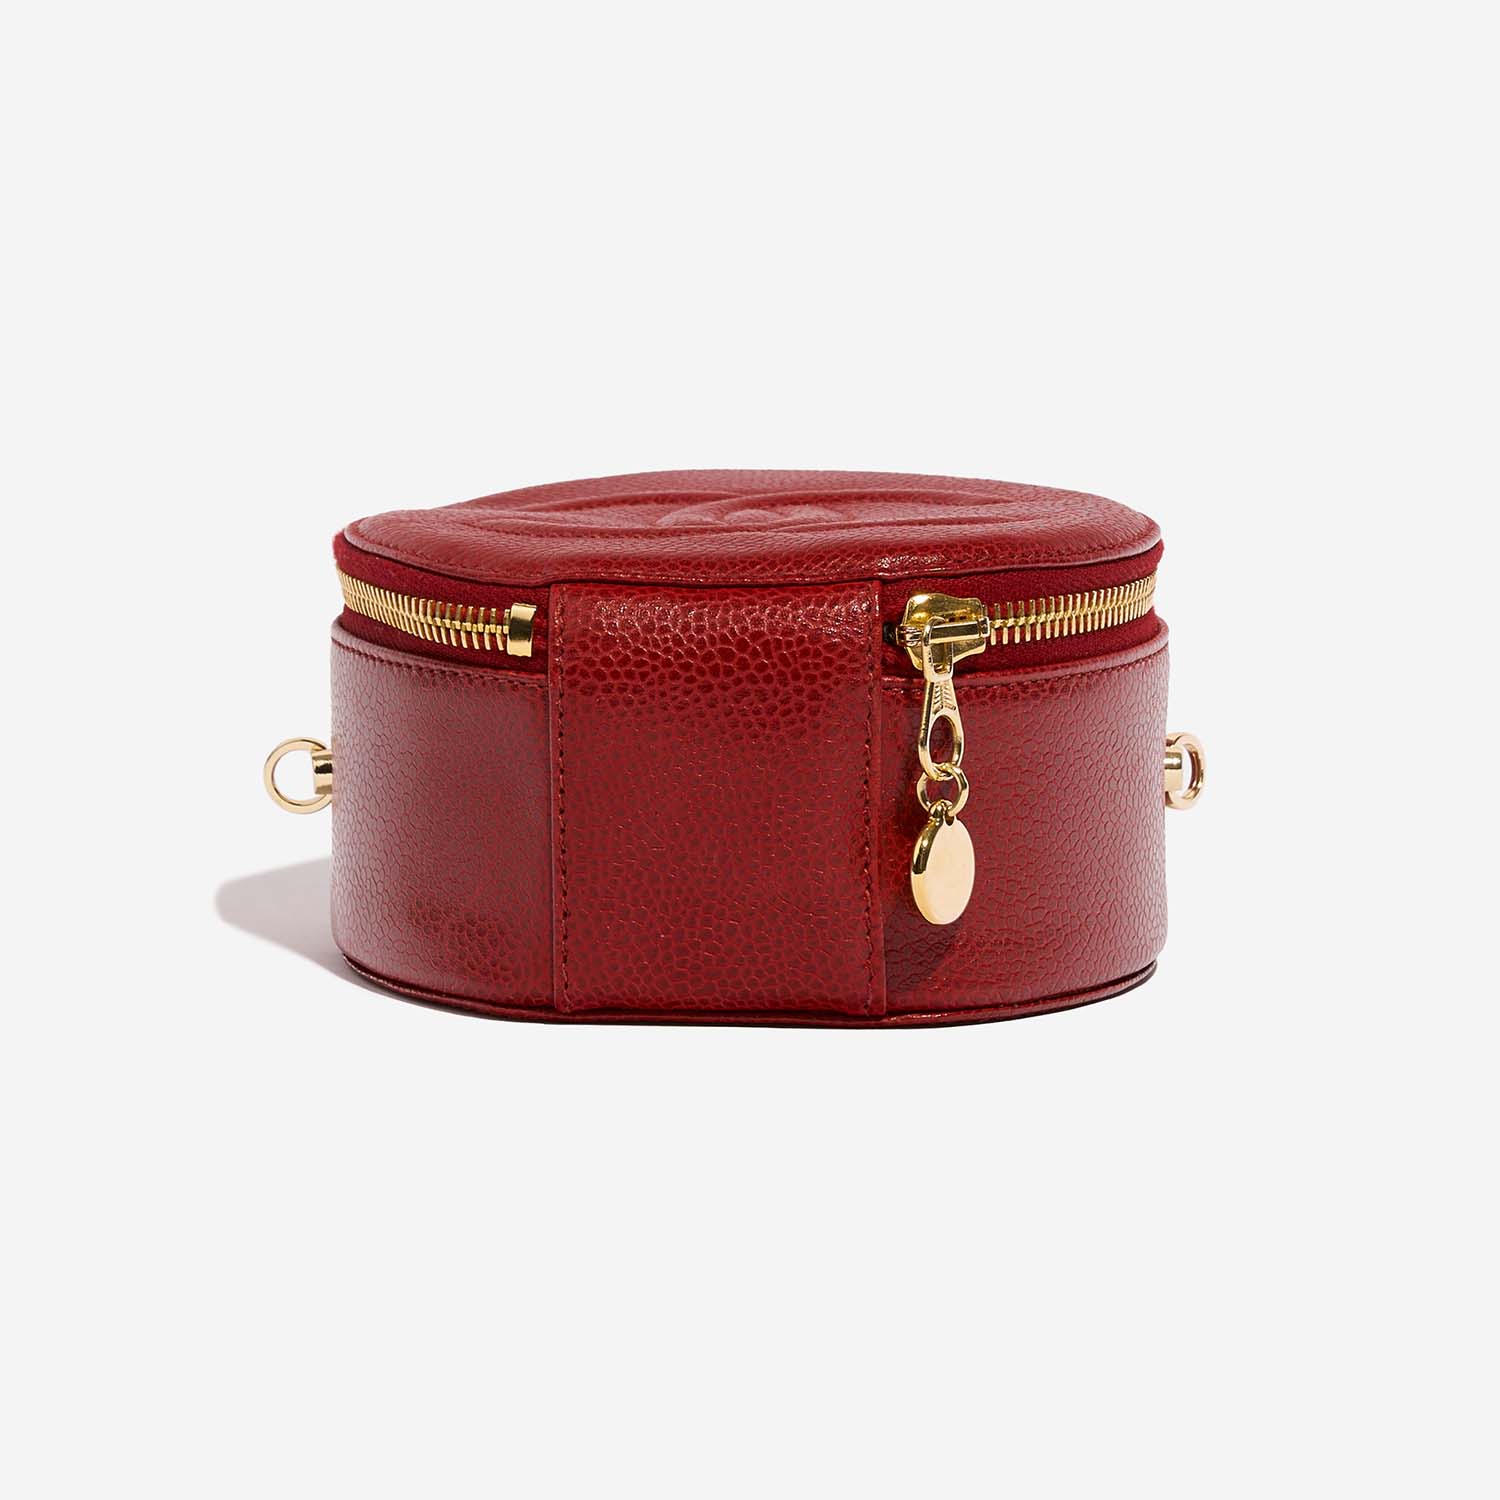 Chanel Vanity small Red Bottom | Verkaufen Sie Ihre Designertasche auf Saclab.com